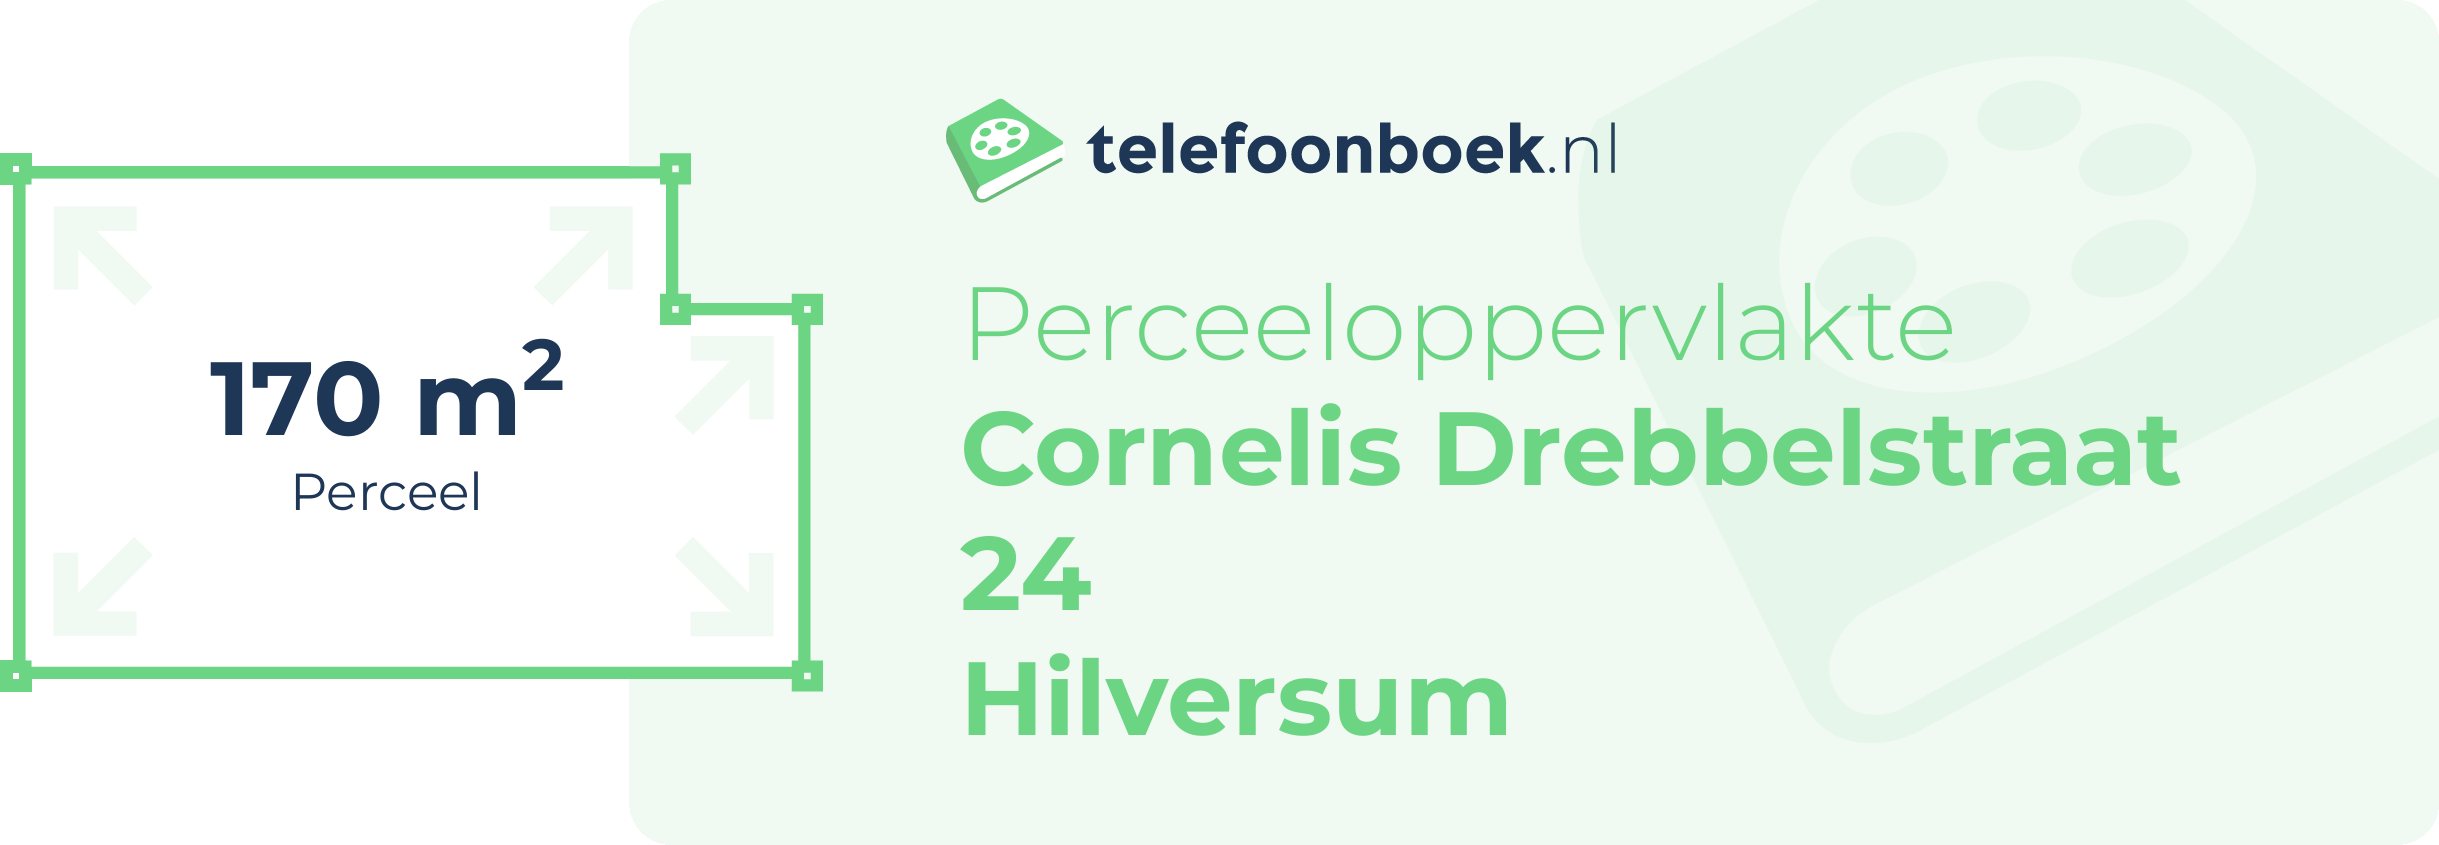 Perceeloppervlakte Cornelis Drebbelstraat 24 Hilversum